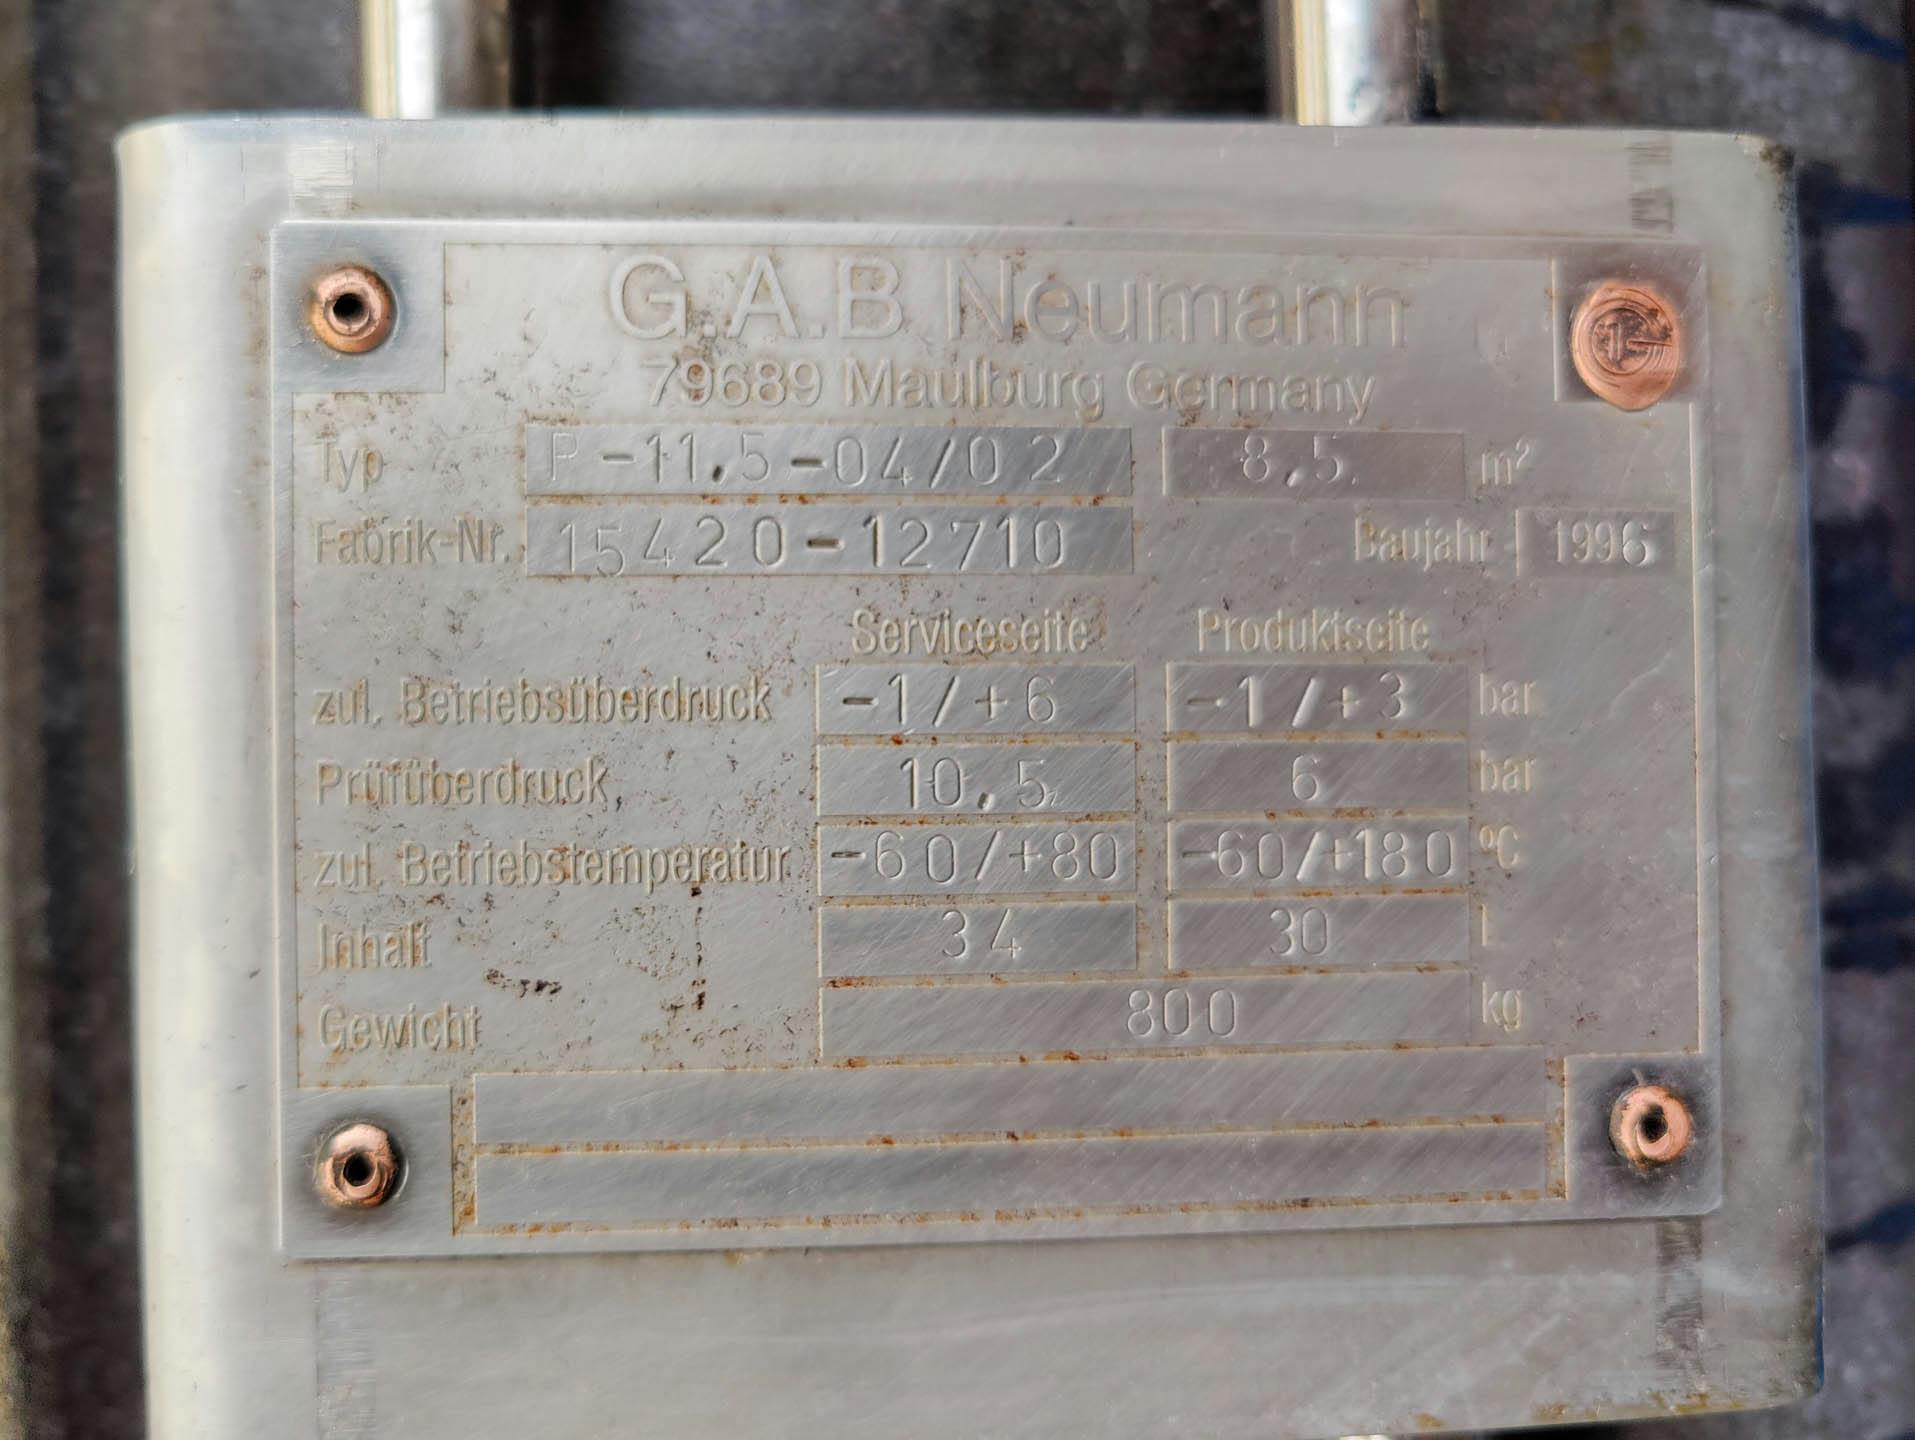 Gab Neumann R-11,5-04/02 Ringnut - Pláštový a trubkový výmeník tepla - image 6